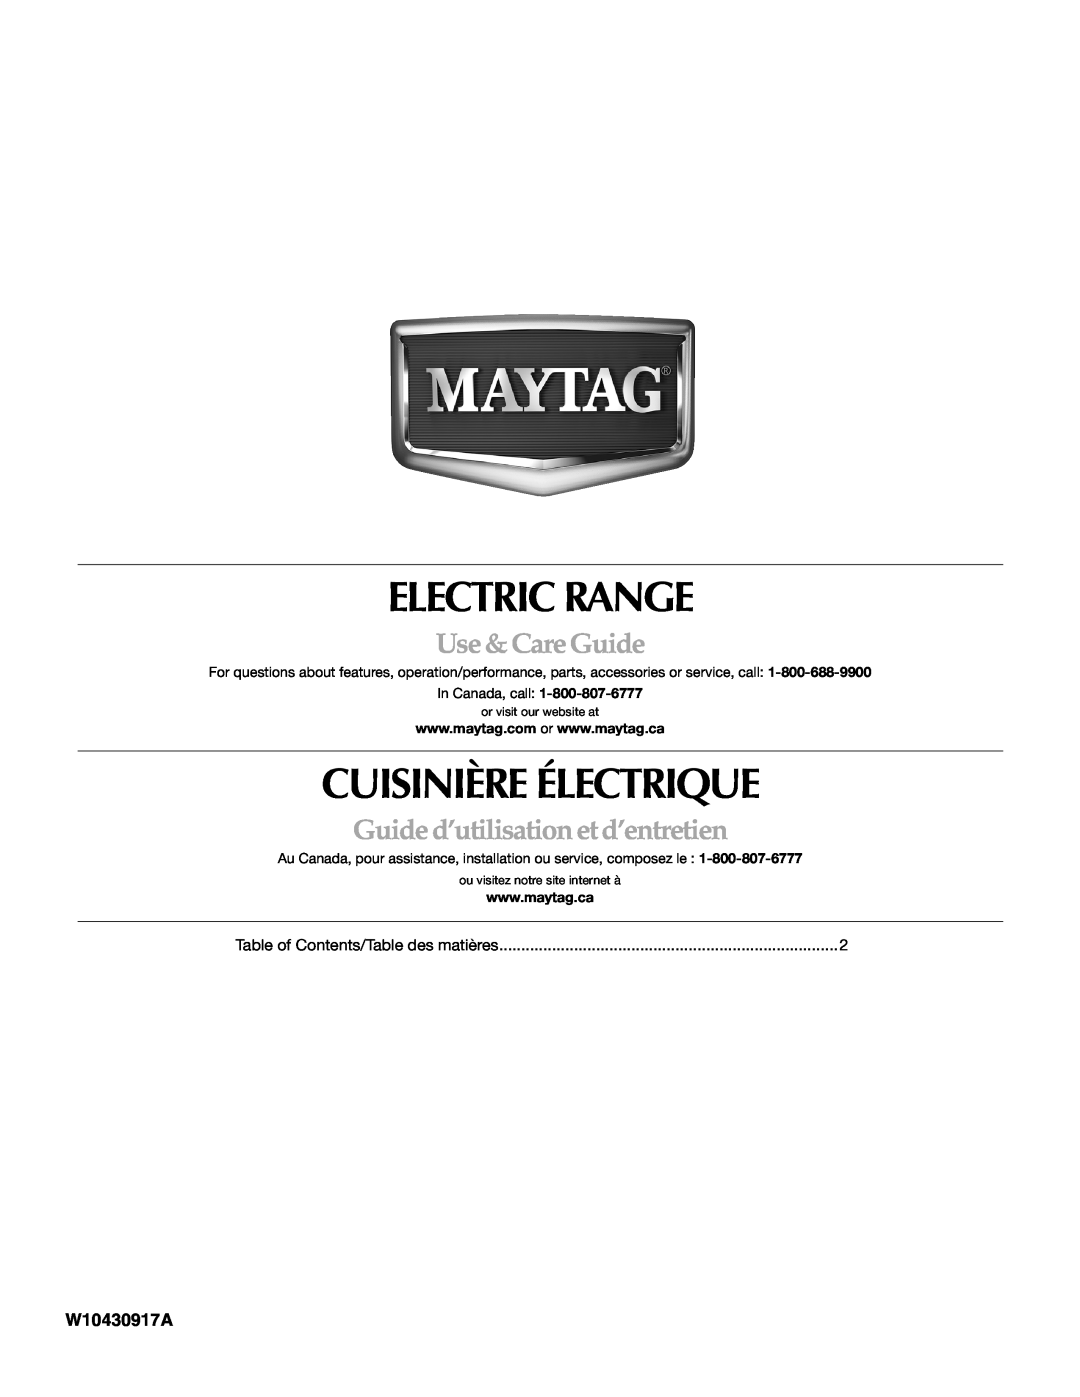 Maytag W10430917A manual Electric Range, Cuisinière Électrique, Use & Care Guide, Guide d’utilisation et d’entretien 